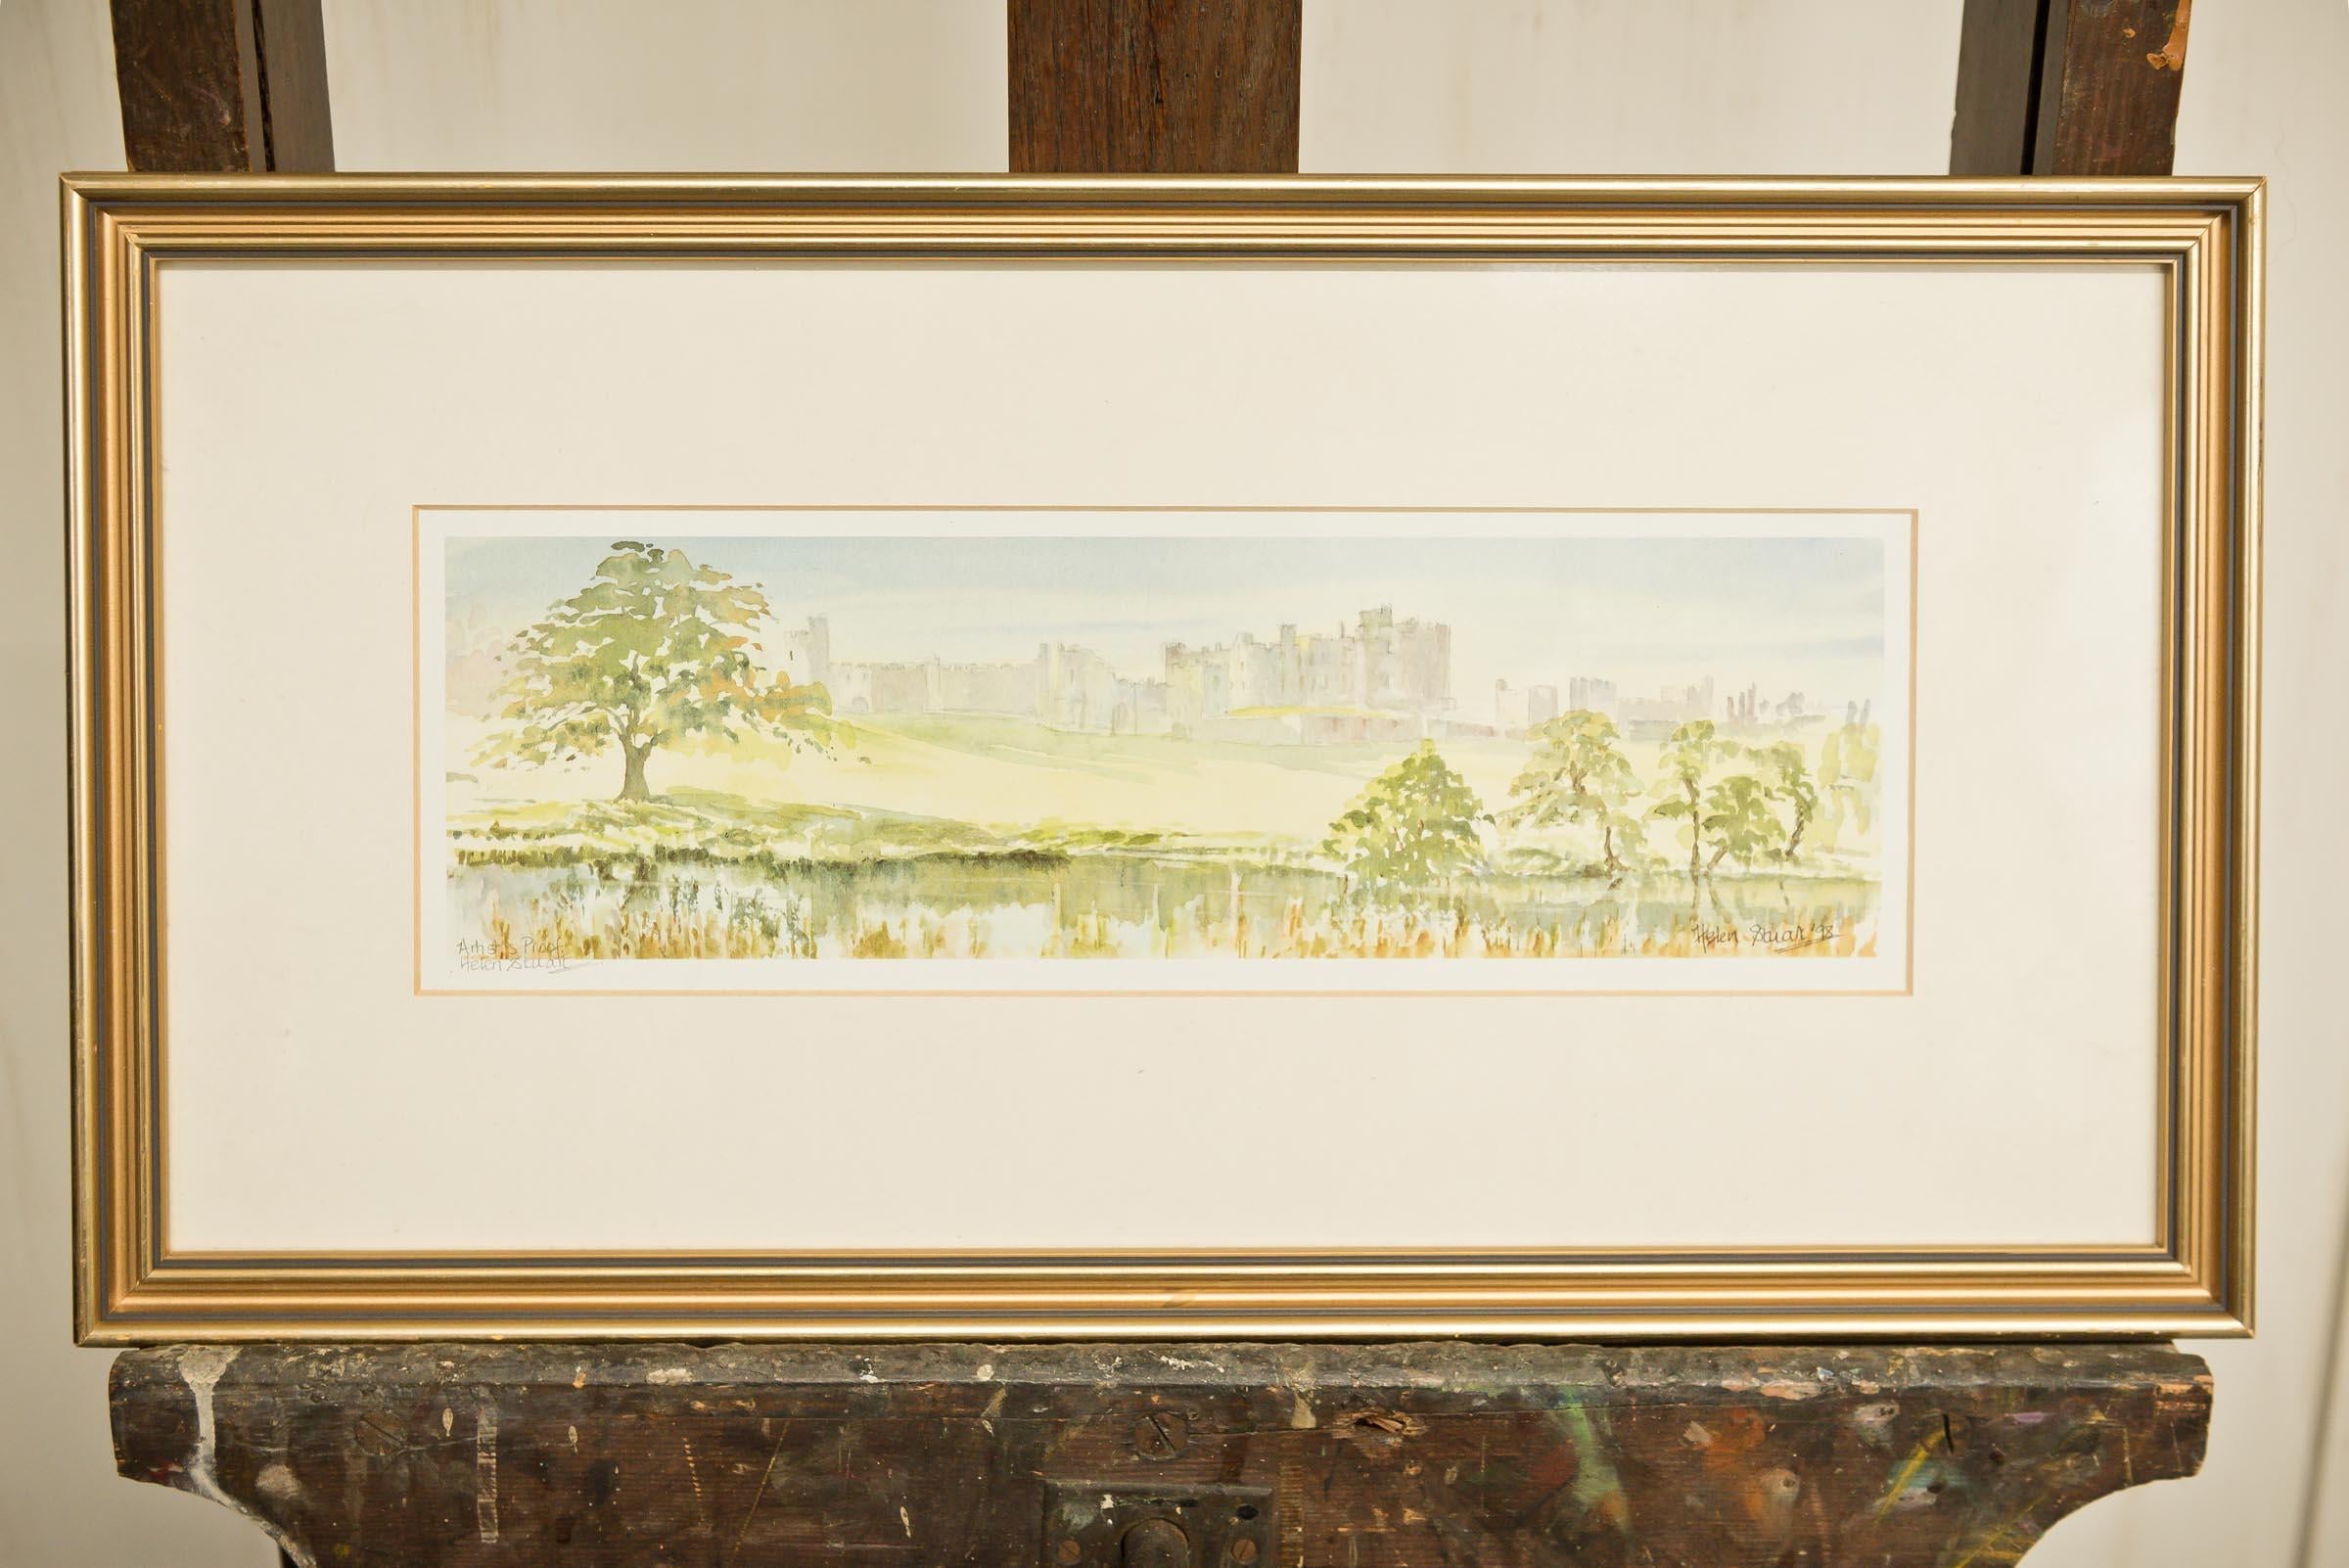 Helen Stuart est une artiste aquarelliste spécialisée dans les scènes du Northumberland. Cette épreuve d'artiste signée du château d'Alnwick est encadrée et s'intègre facilement dans n'importe quel espace. Les couleurs douces, les arbres et l'eau